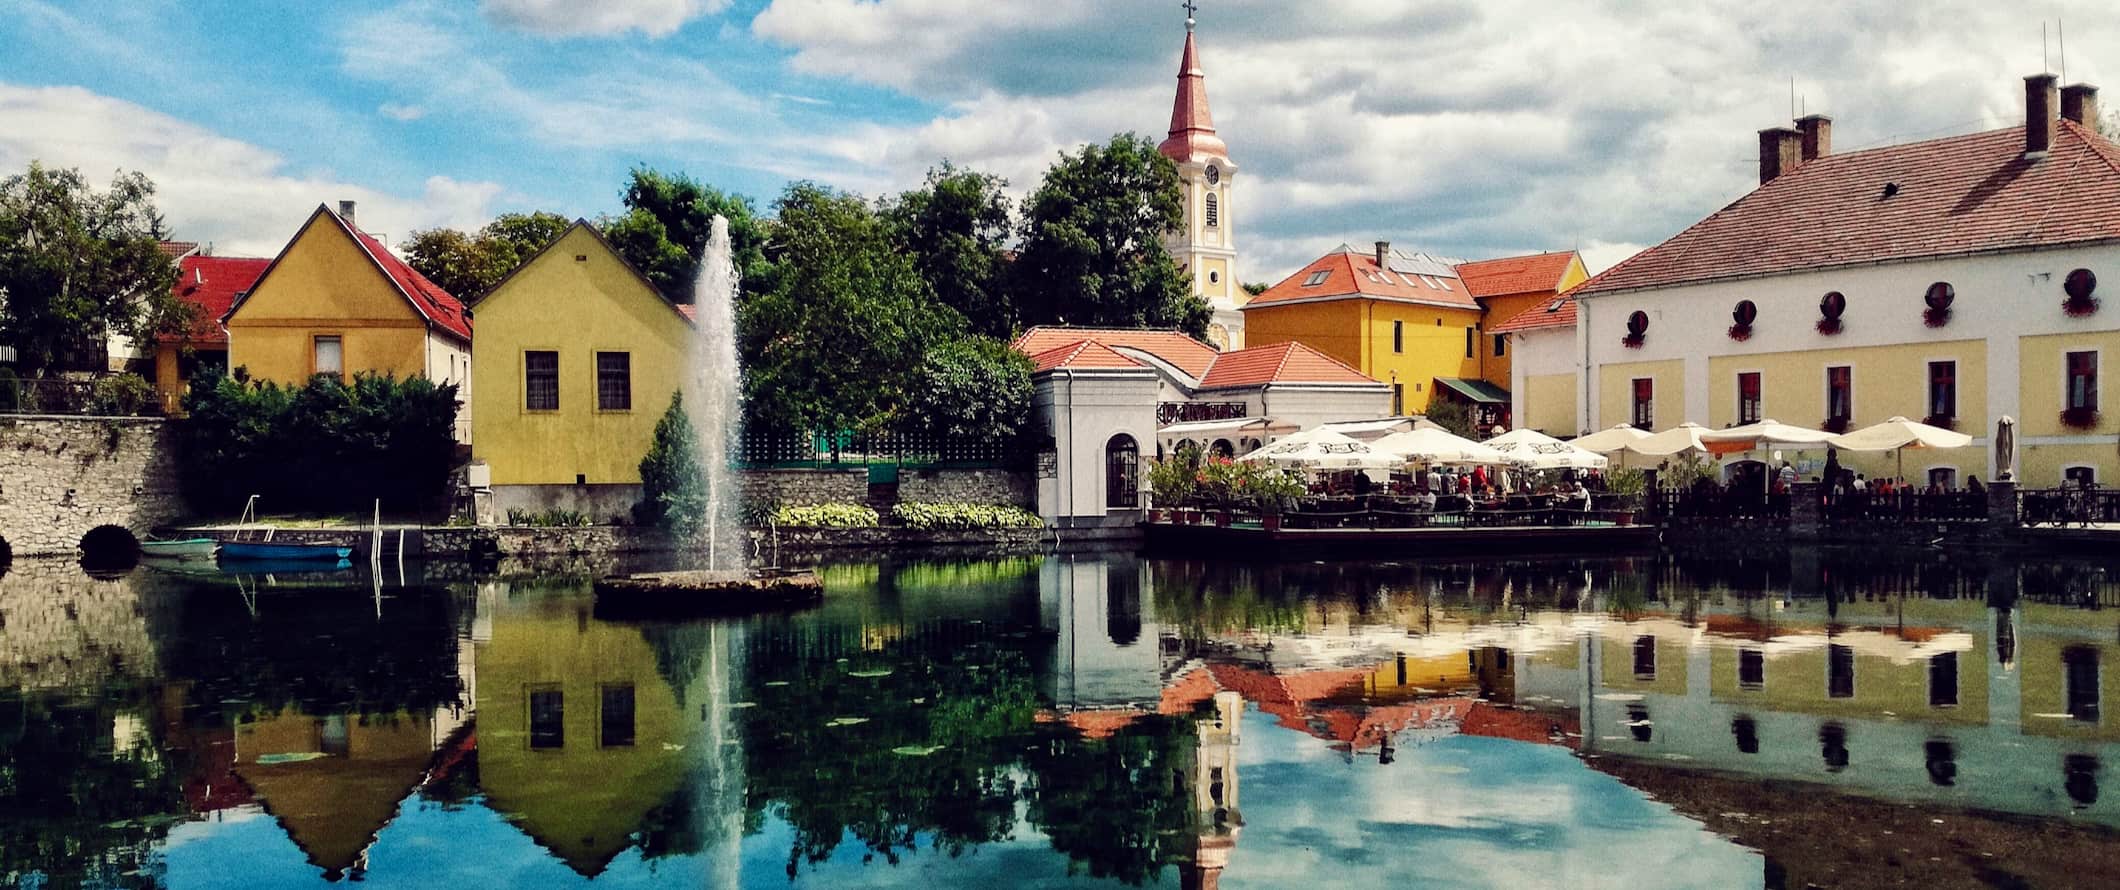 这是匈牙利一个色彩丰富、历史悠久的小镇，平静的水面倒映着它